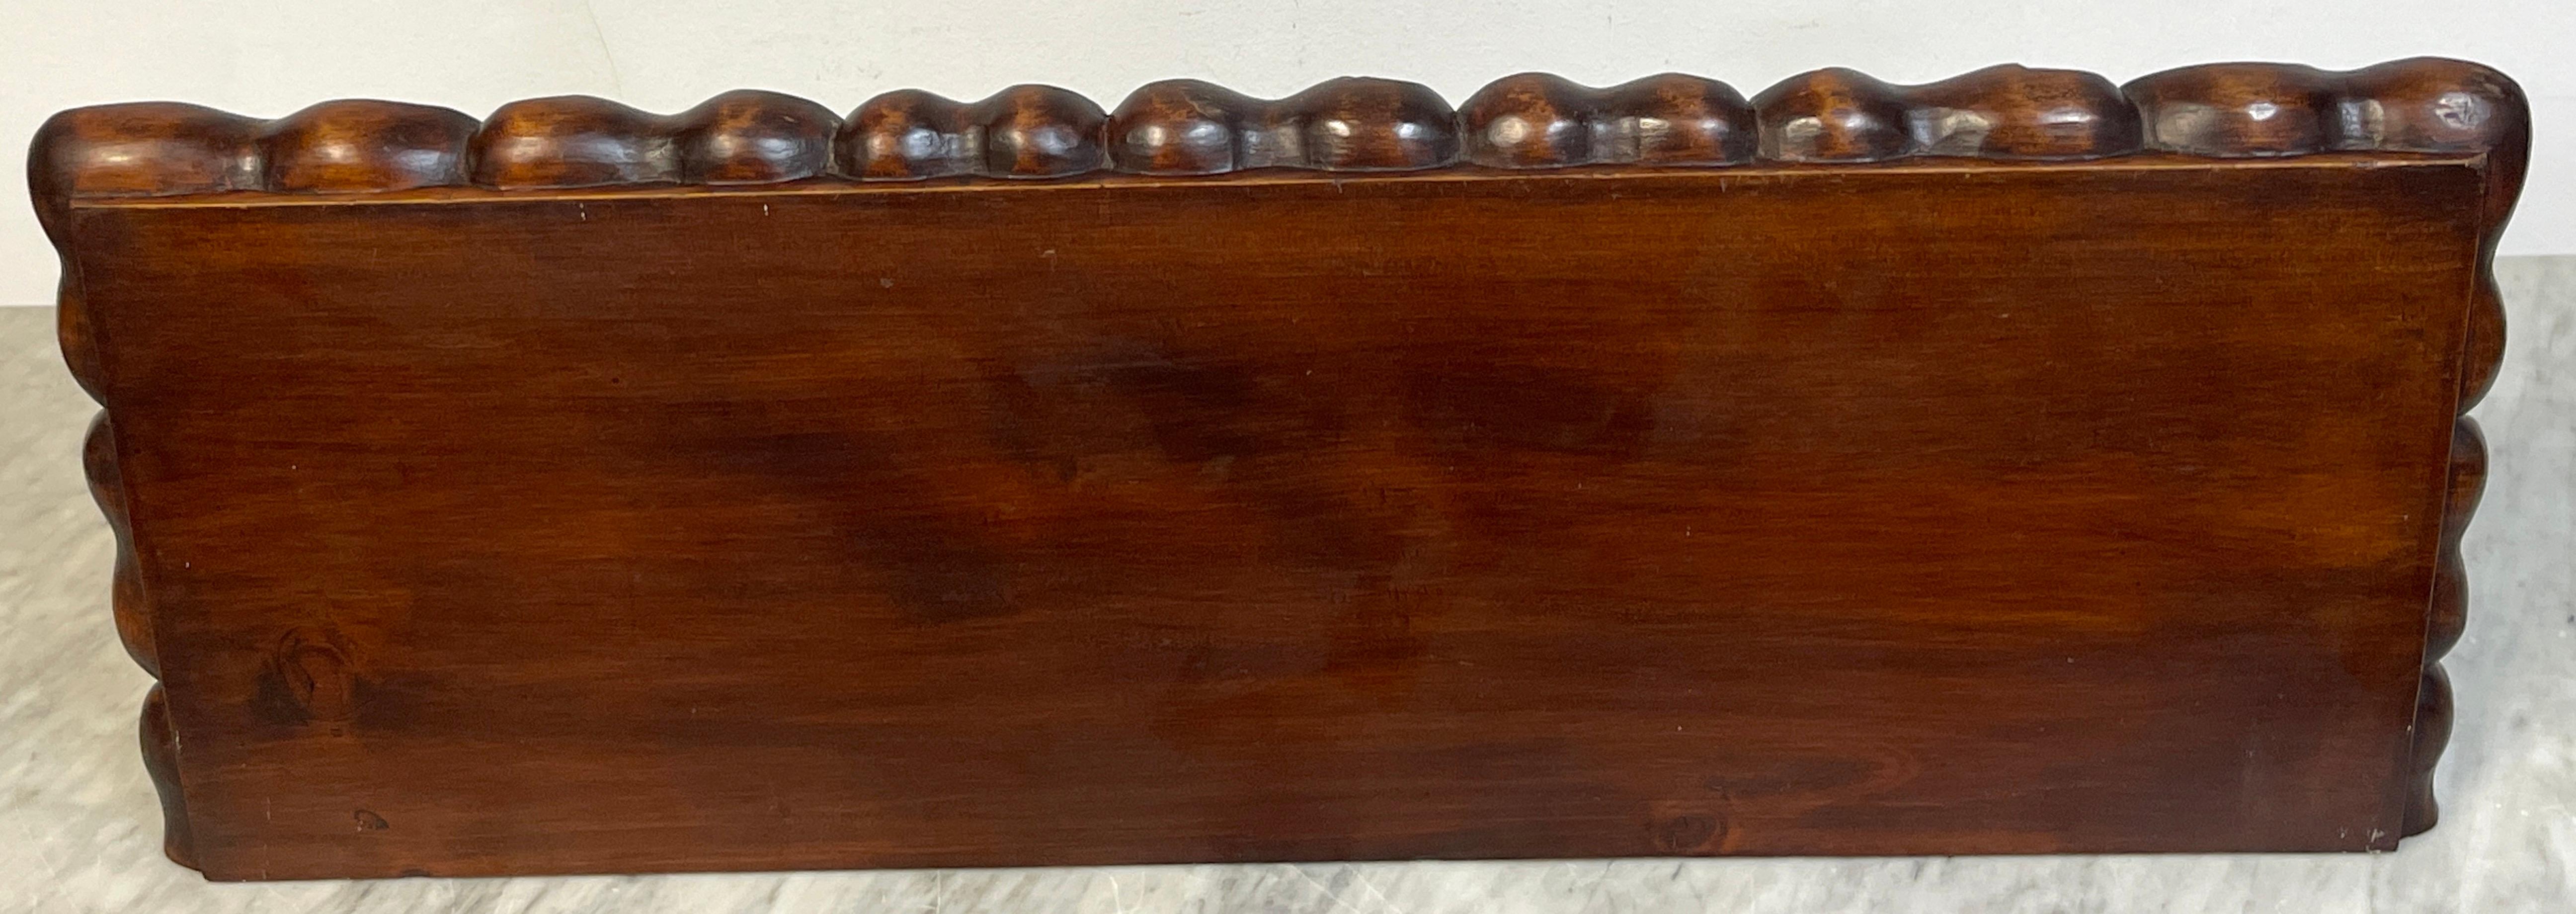 English Regency Style Plum Pudding Hardwood Wall Bracket/ Shelf For Sale 3